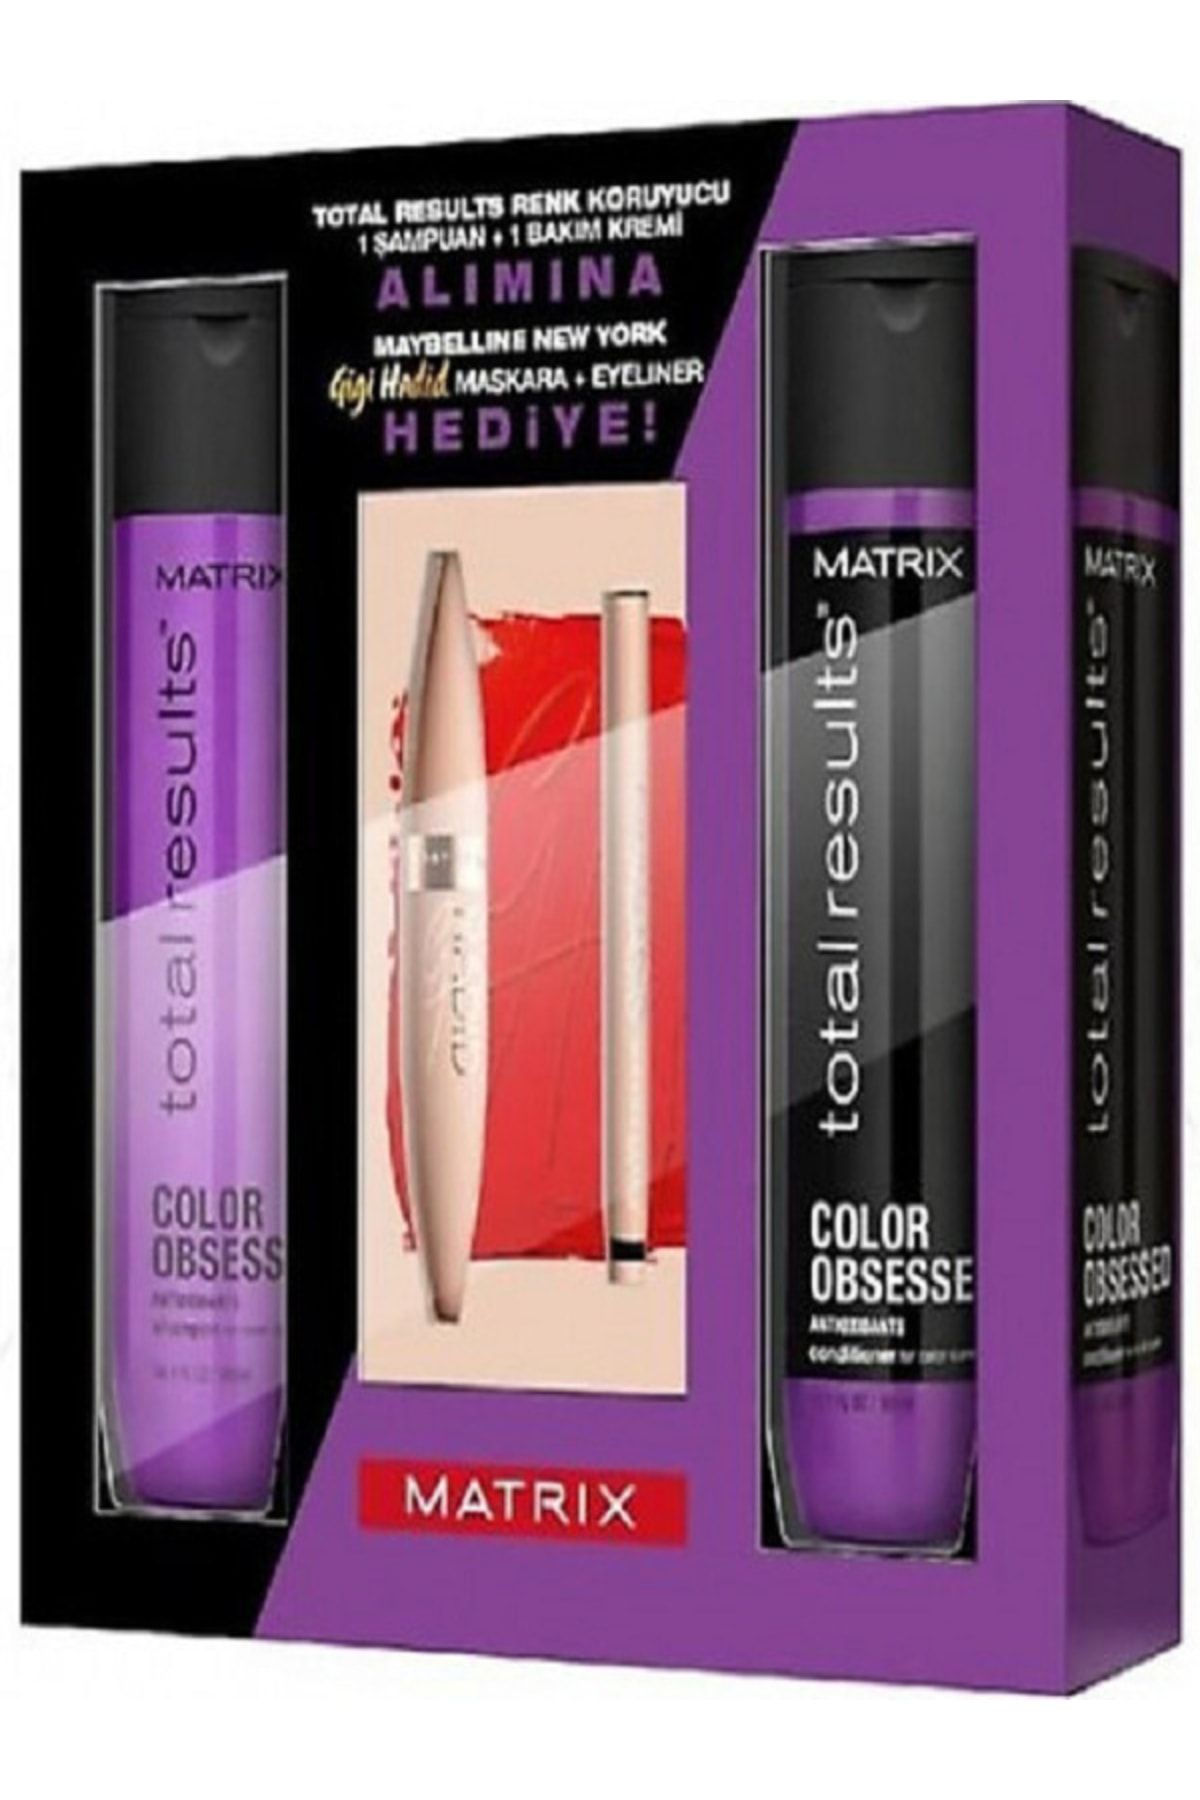 Matrix Renk Koruyucu Ve Güçlendirici 1 Şampuan + 1 Krem Set (maybelline Maskara + Eyeliner Hediye)